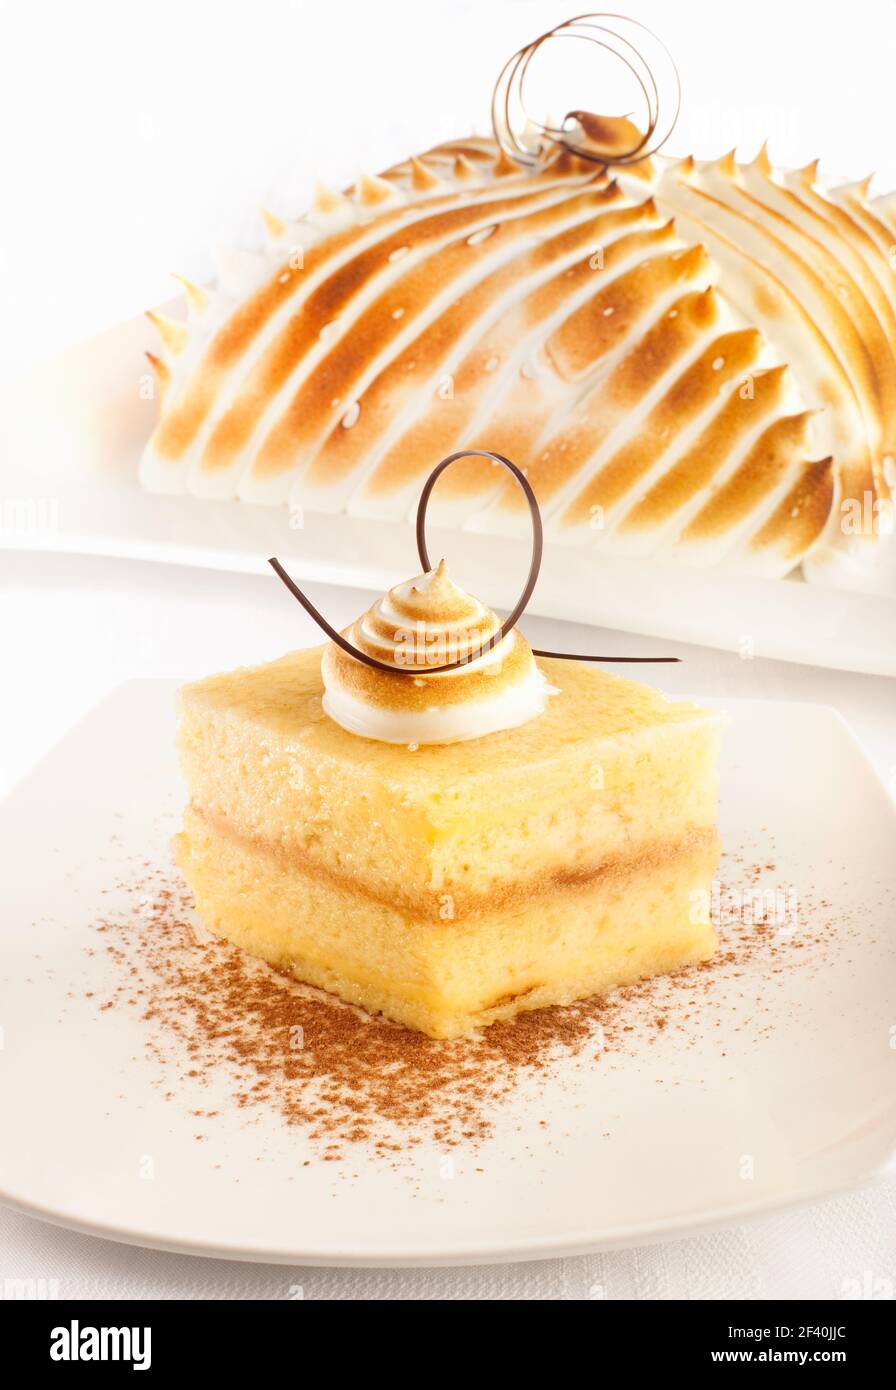 Eine Torte sehr beliebt in Lateinamerika bekannt als Torta de tres leches, spanisch für drei Milchkuchen. Stockfoto